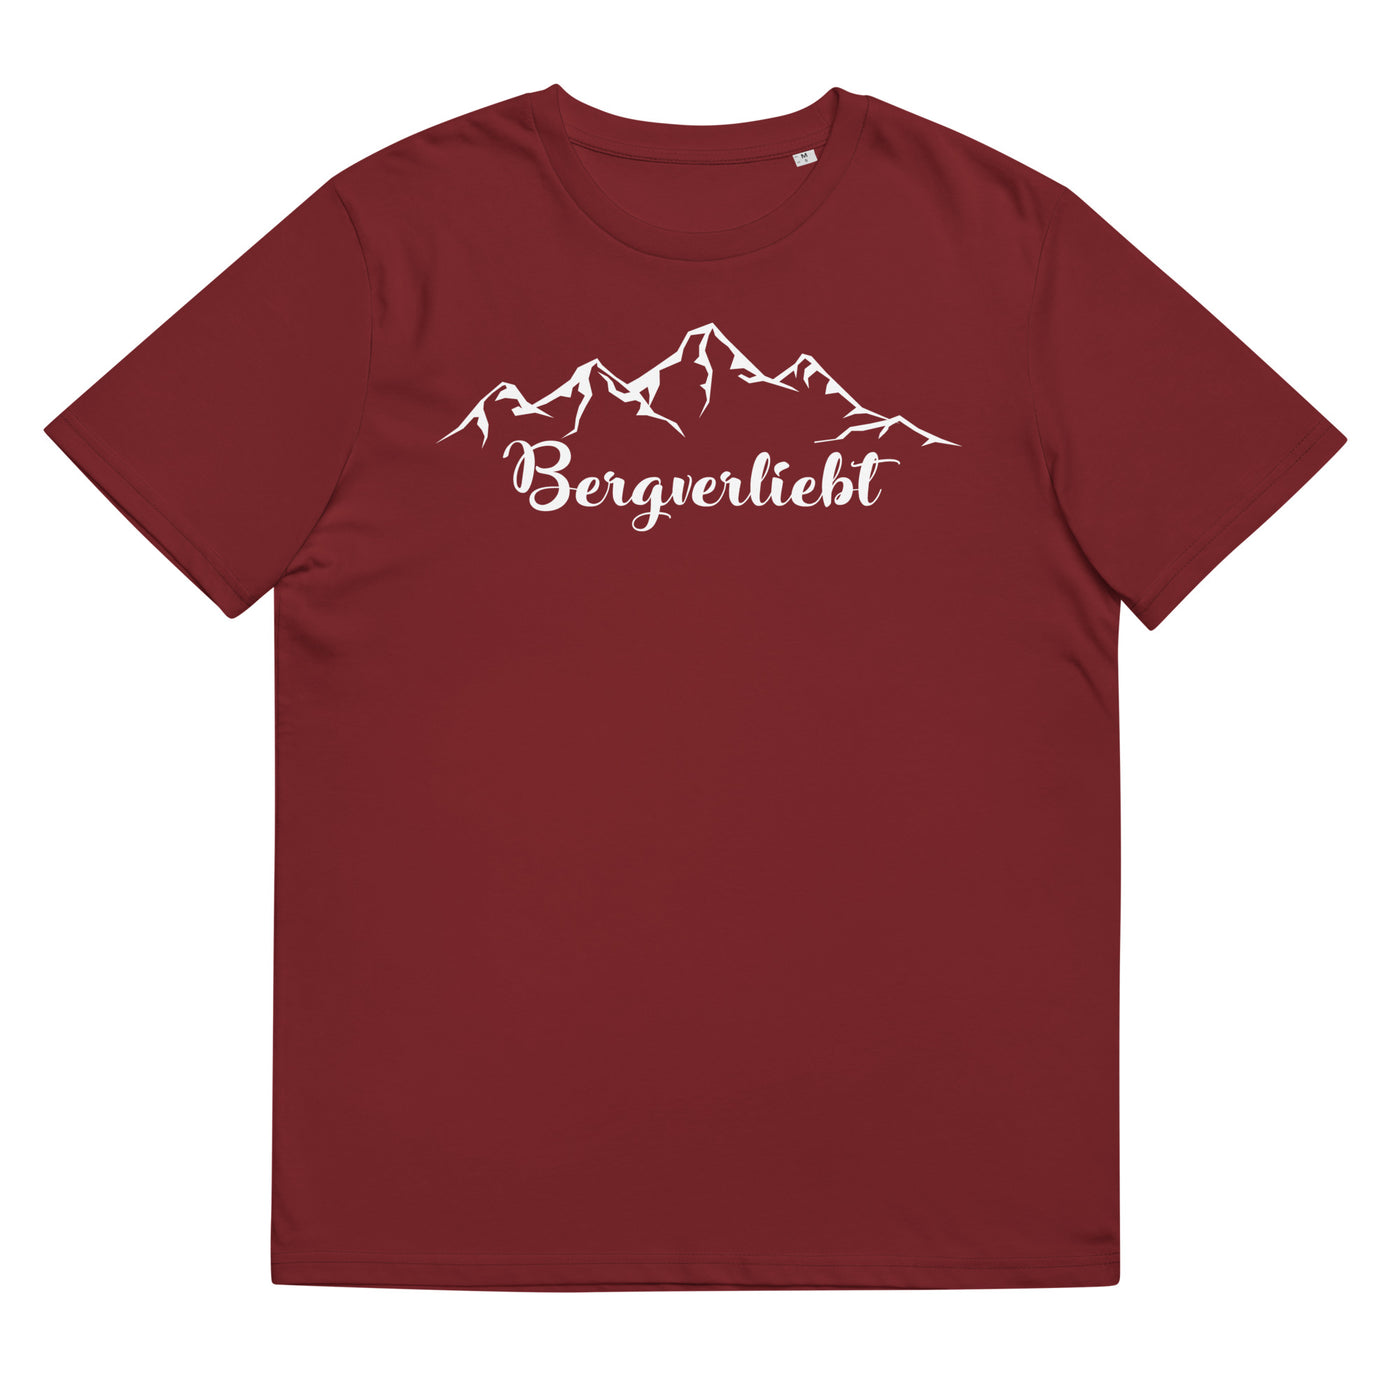 Bergverliebt (13) - Herren Premium Organic T-Shirt berge Weinrot